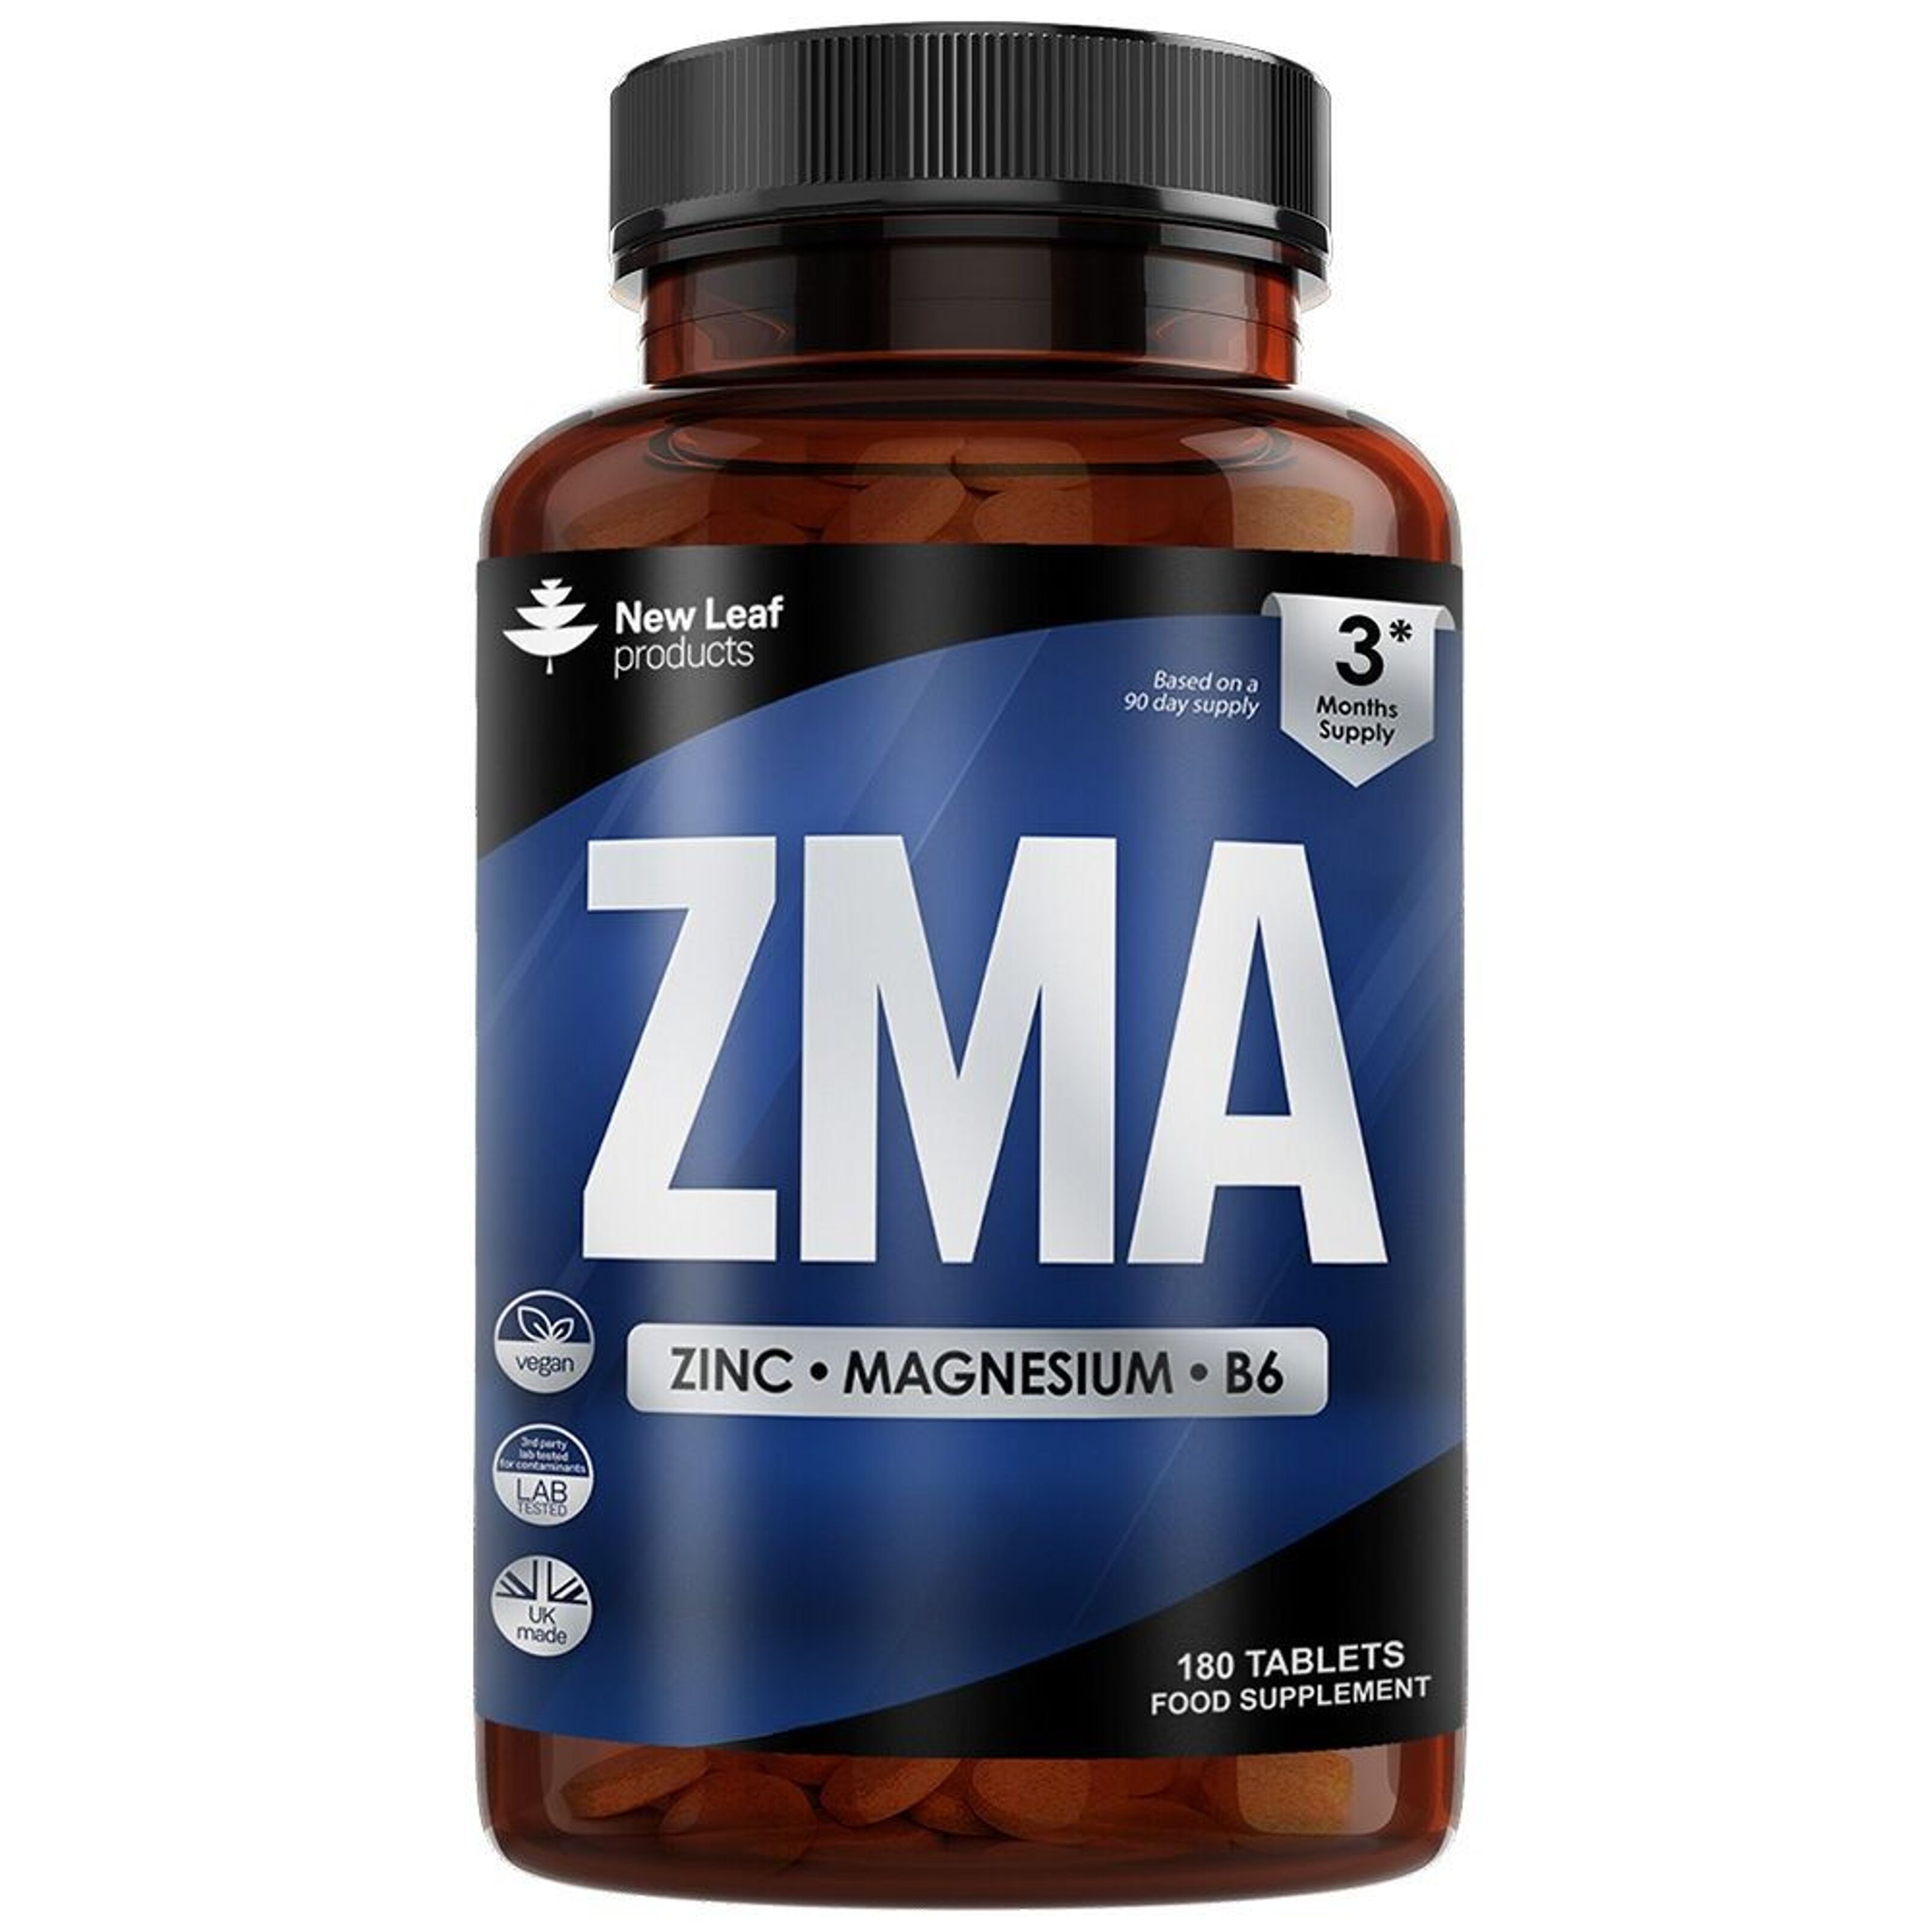 ZMA: Zinc and Magnesium, The Benefits of ZMA